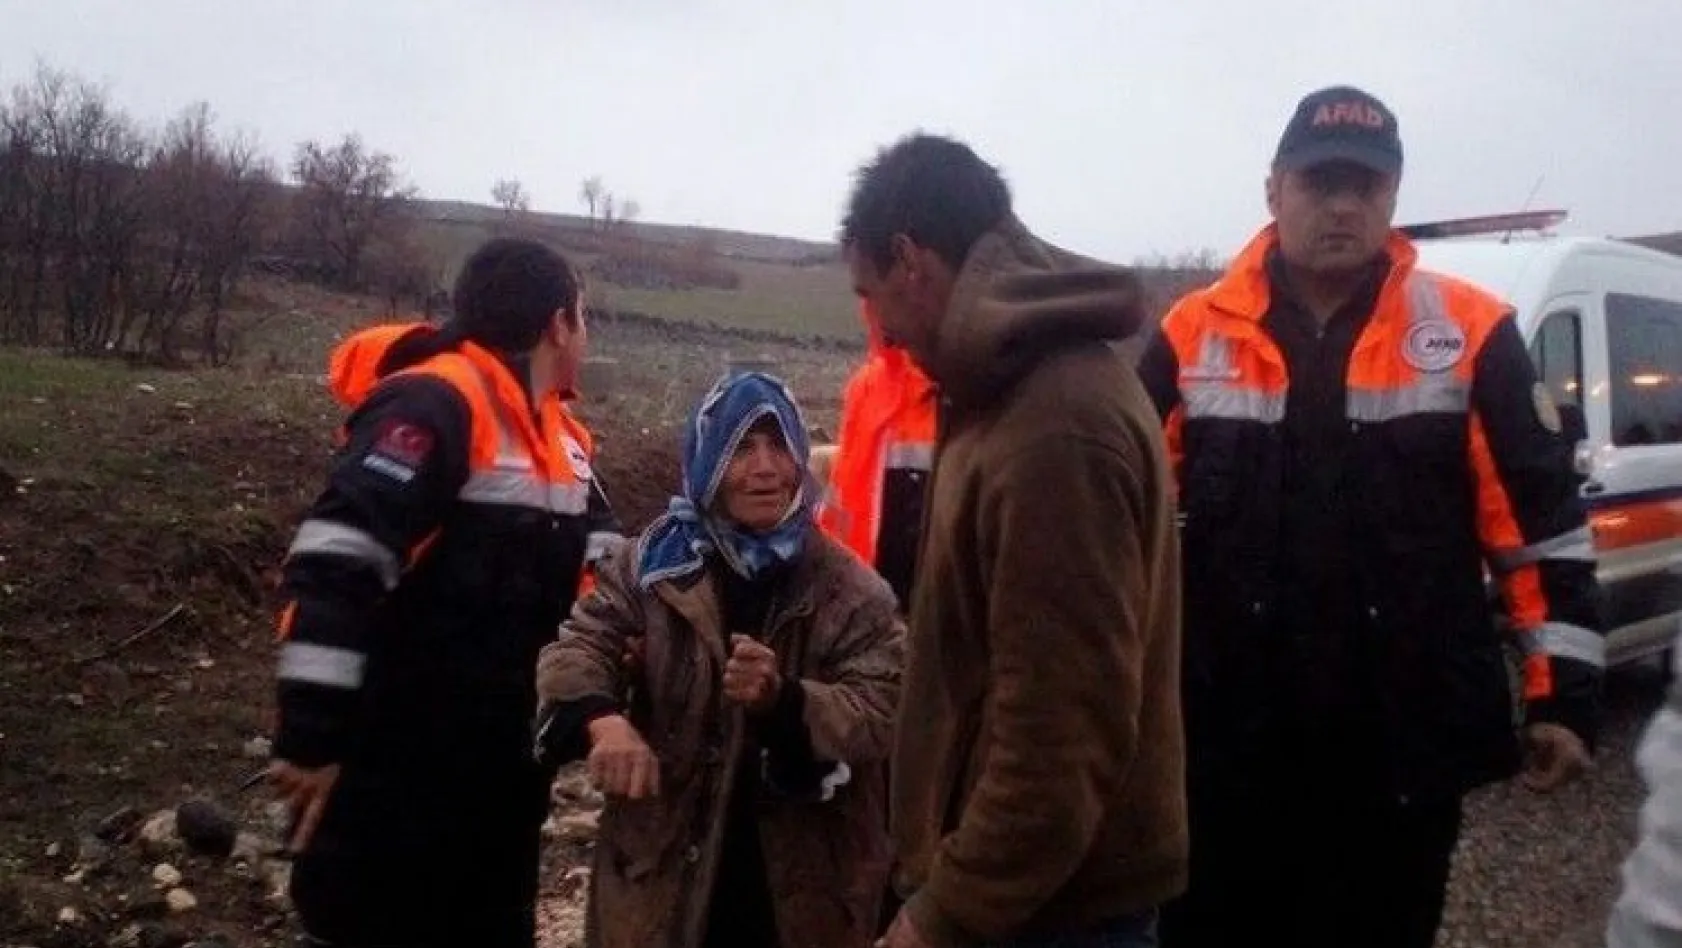 Tunceli'de kaybolan yaşlı kadın ile intihara teşebbüs eden şahsı AFAD ekipleri kurtardı
